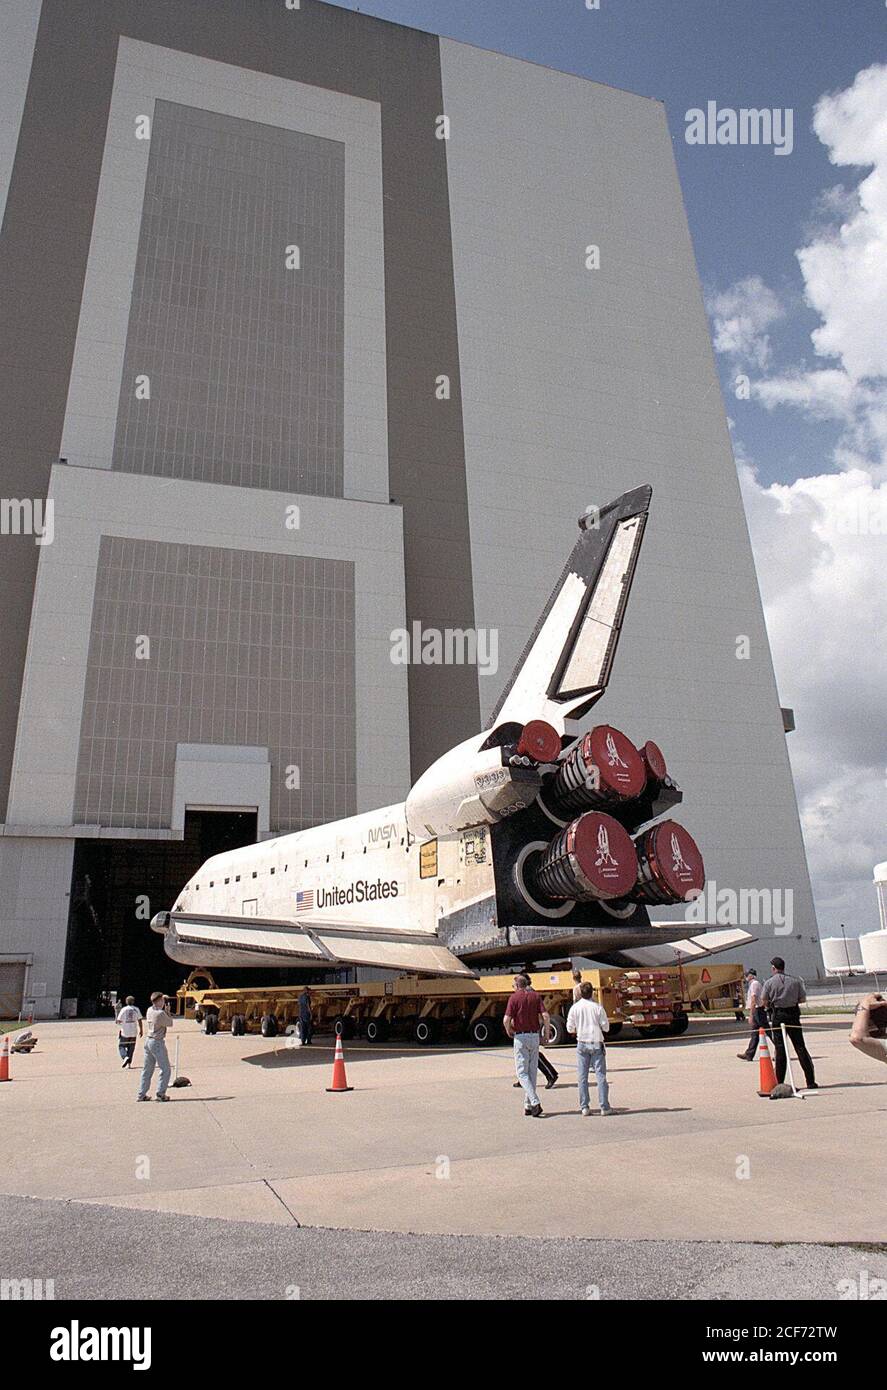 Der Orbiter Columbia rollt an Bord seines Orbiter-Transportsystems zur Öffnung im Fahrzeugmontage-Gebäude, wo er sich externen Tankpaarungen unterziehen wird. Die Einführung von Pad 39B für die Mission STS-93 ist für Columbia am Montag, 7. Juni geplant. Das Hauptziel der Mission ist die Einrichtung der Advanced X-ray Astrophysics Facility, die kürzlich in Chandra X-Ray Observatory umbenannt wurde. Mission STS-93 wird das erste von einer Frau befehligte Space Shuttle sein, Kommandant Eileen M. Collins. Stockfoto